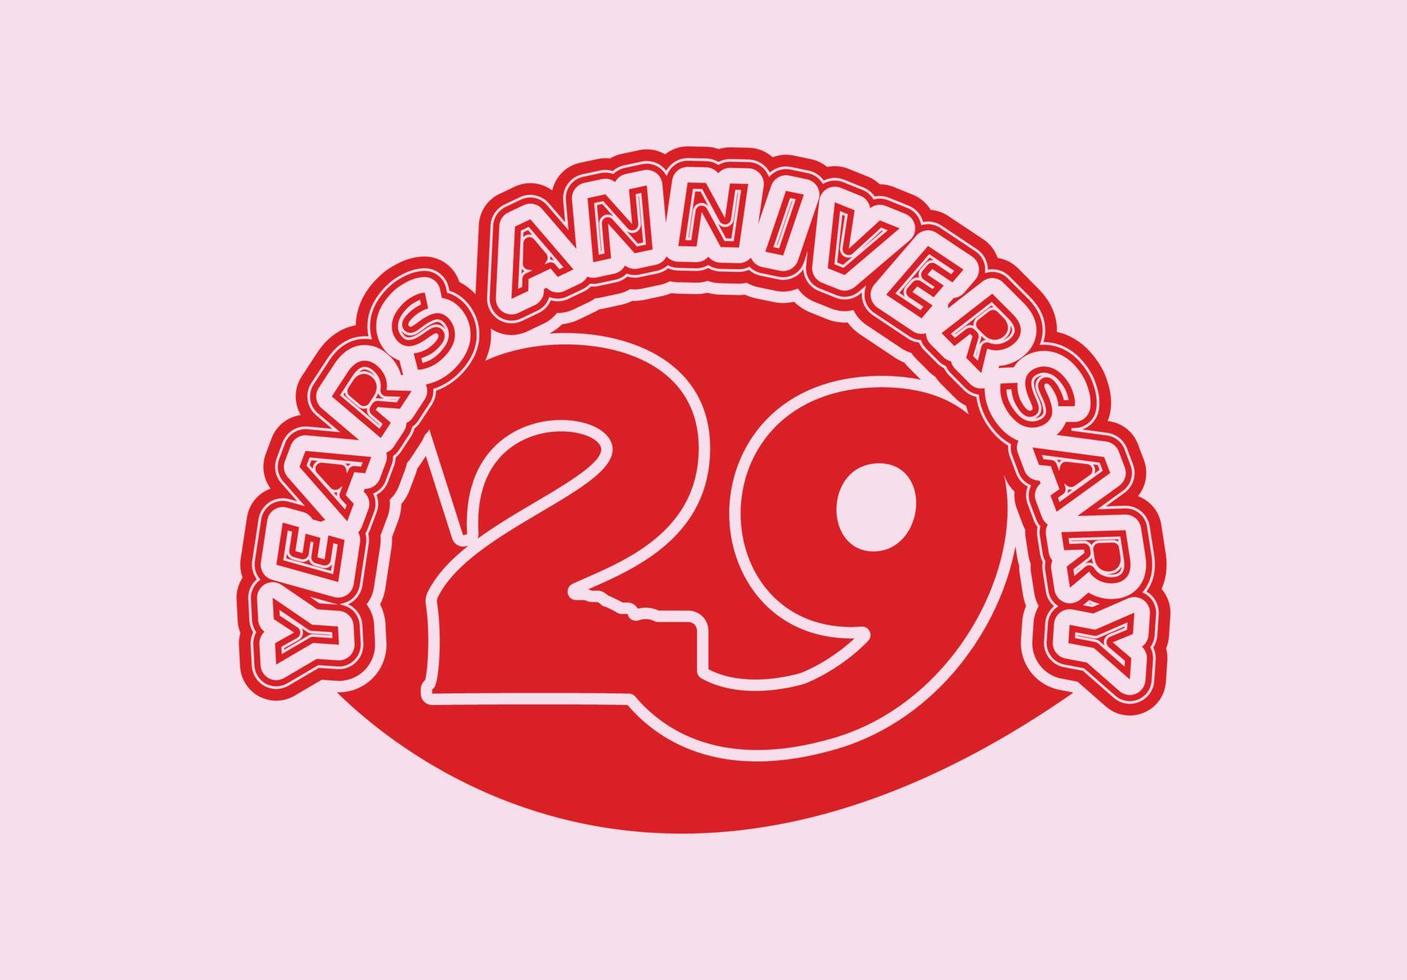 29 år årsdag logotyp och klistermärke design mall vektor